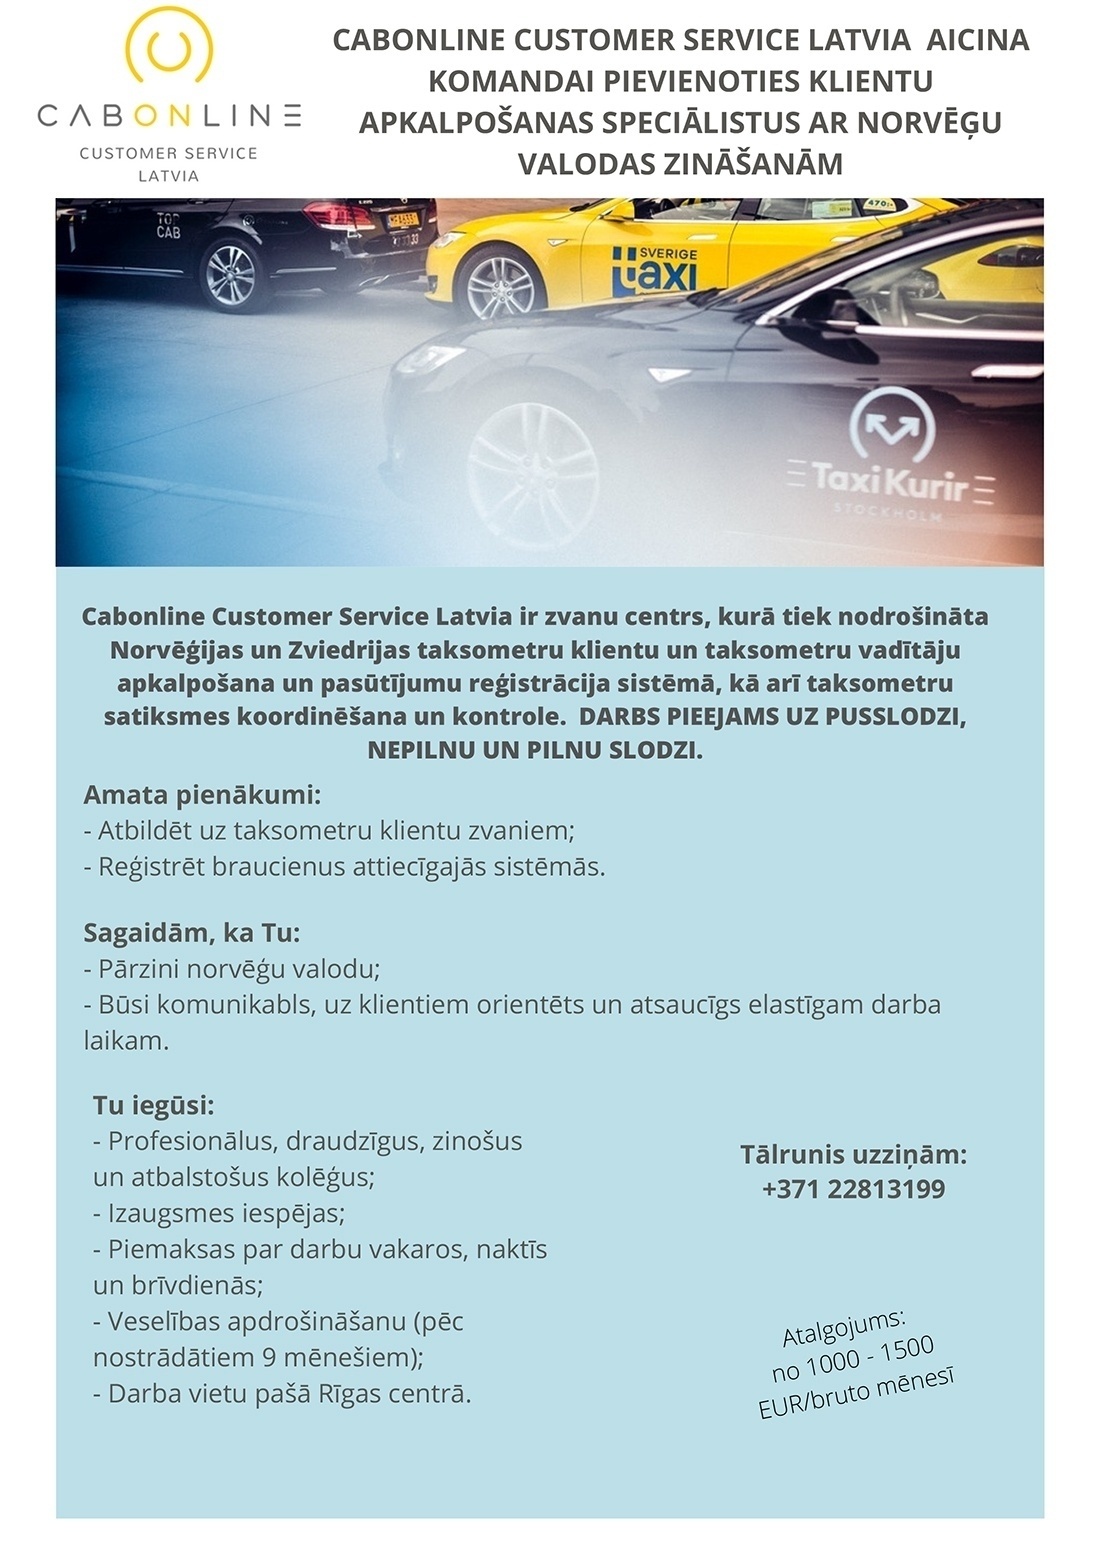 Cabonline Customer Service Latvia, SIA Klientu apkalpošanas speciālisti/-es ar norvēģu valodas zināšanām